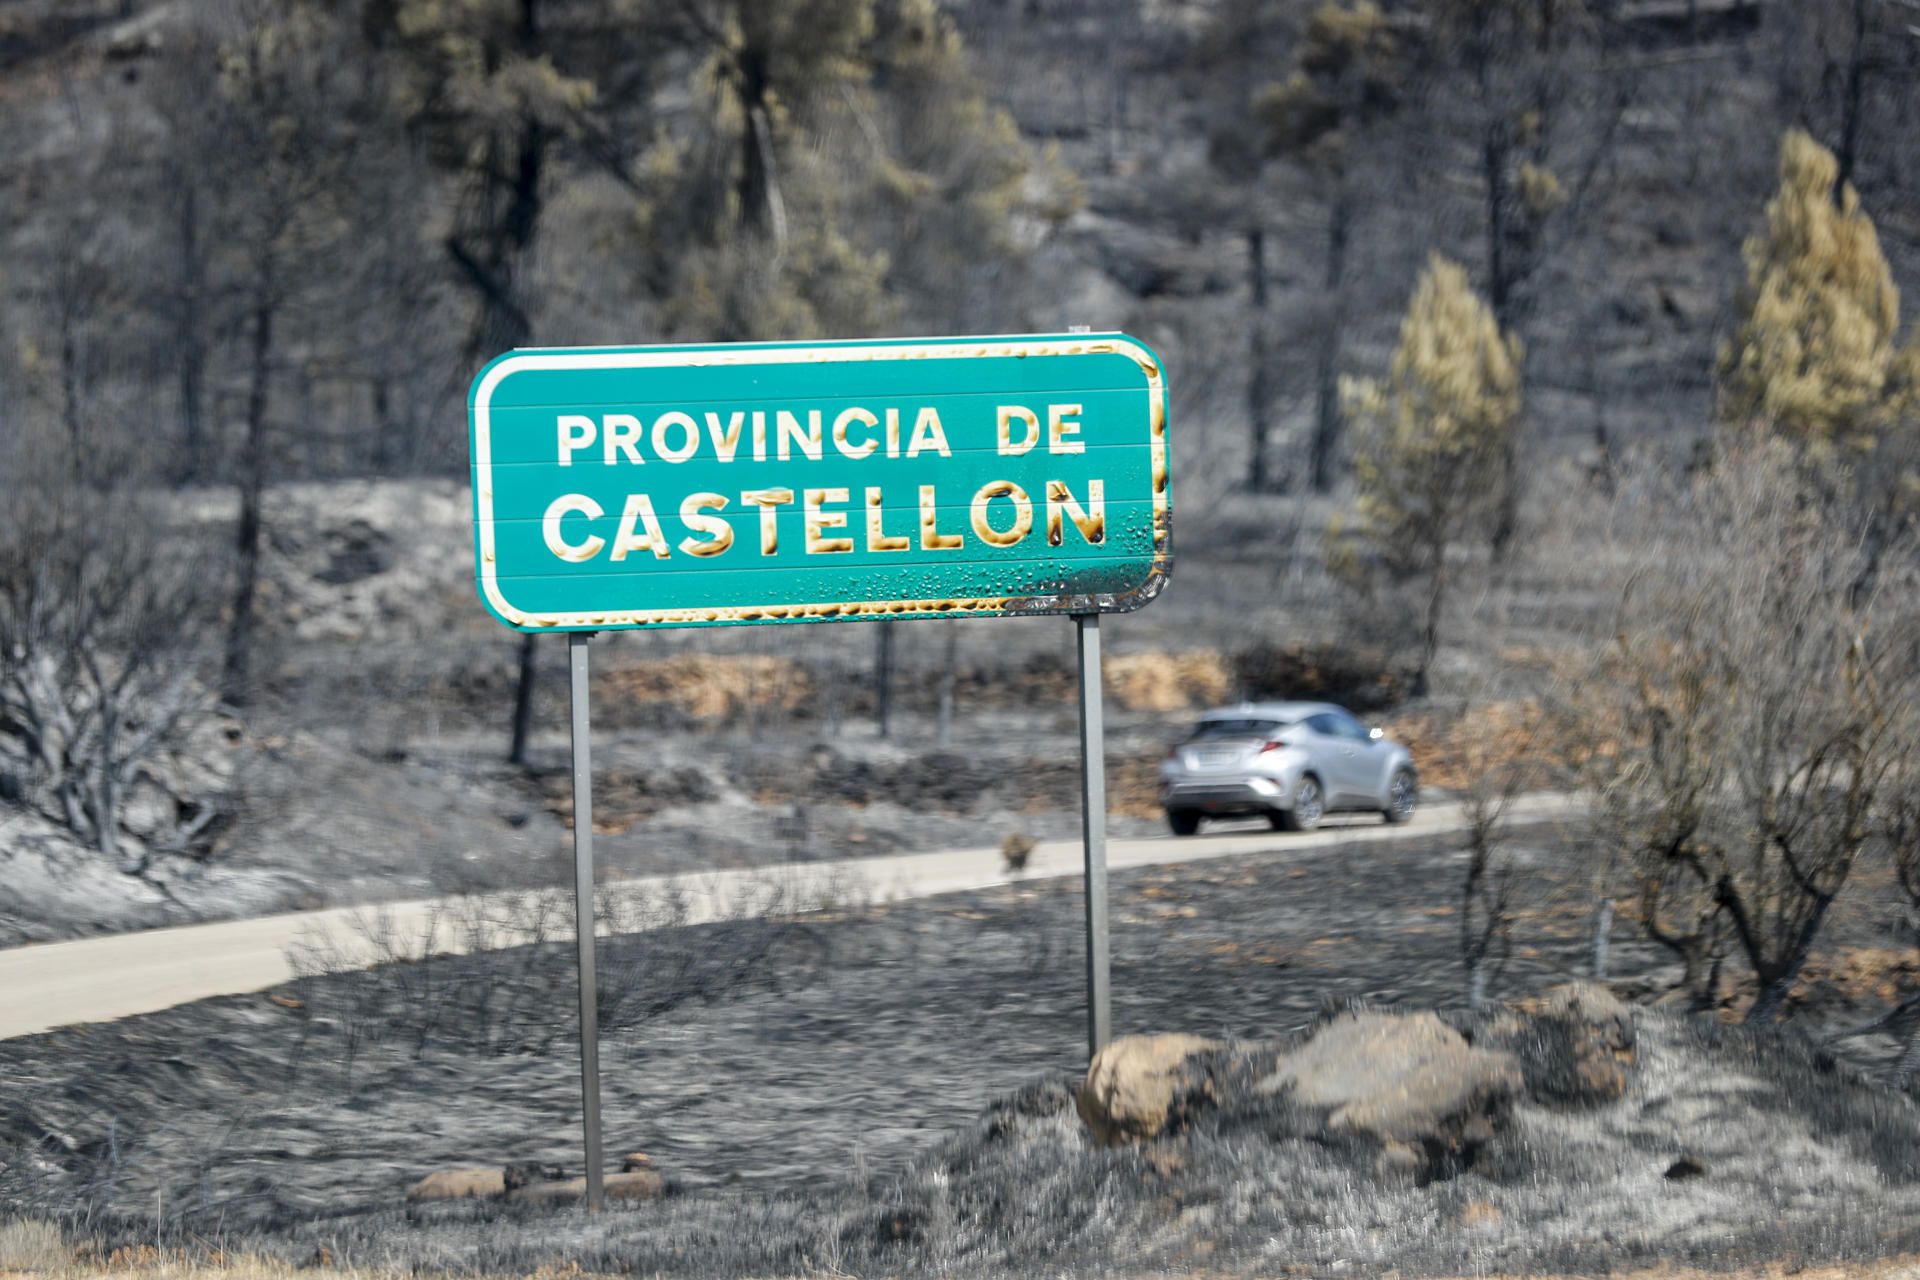 El incendio iniciado en Villanueva de Viver (Castellón) ha arrasado 4.700 hectáreas.